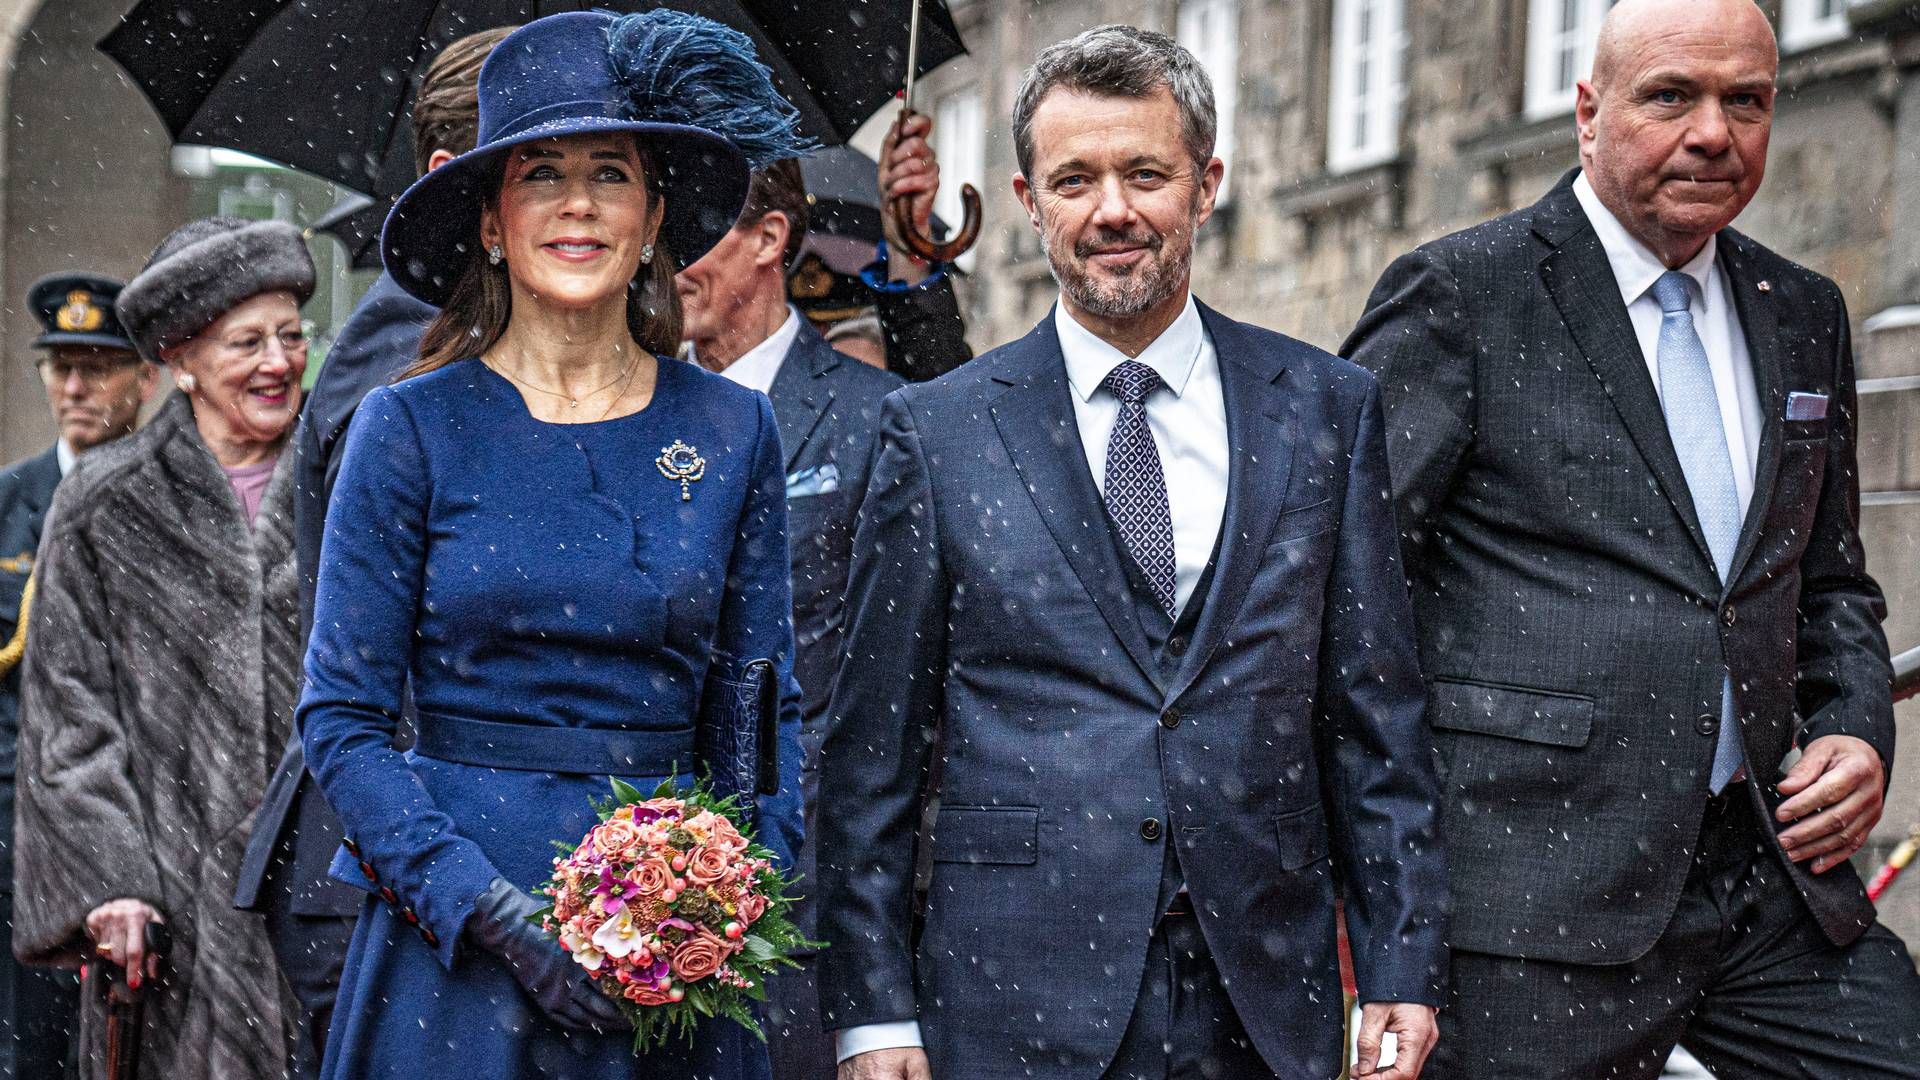 Kong Frederik X og dronning Mary ankom mandag til Folketinget som regentpar og blev modtaget af Folketingets formand, Søren Gade (th.). | Foto: Thomas Traasdahl/Ritzau Scanpix